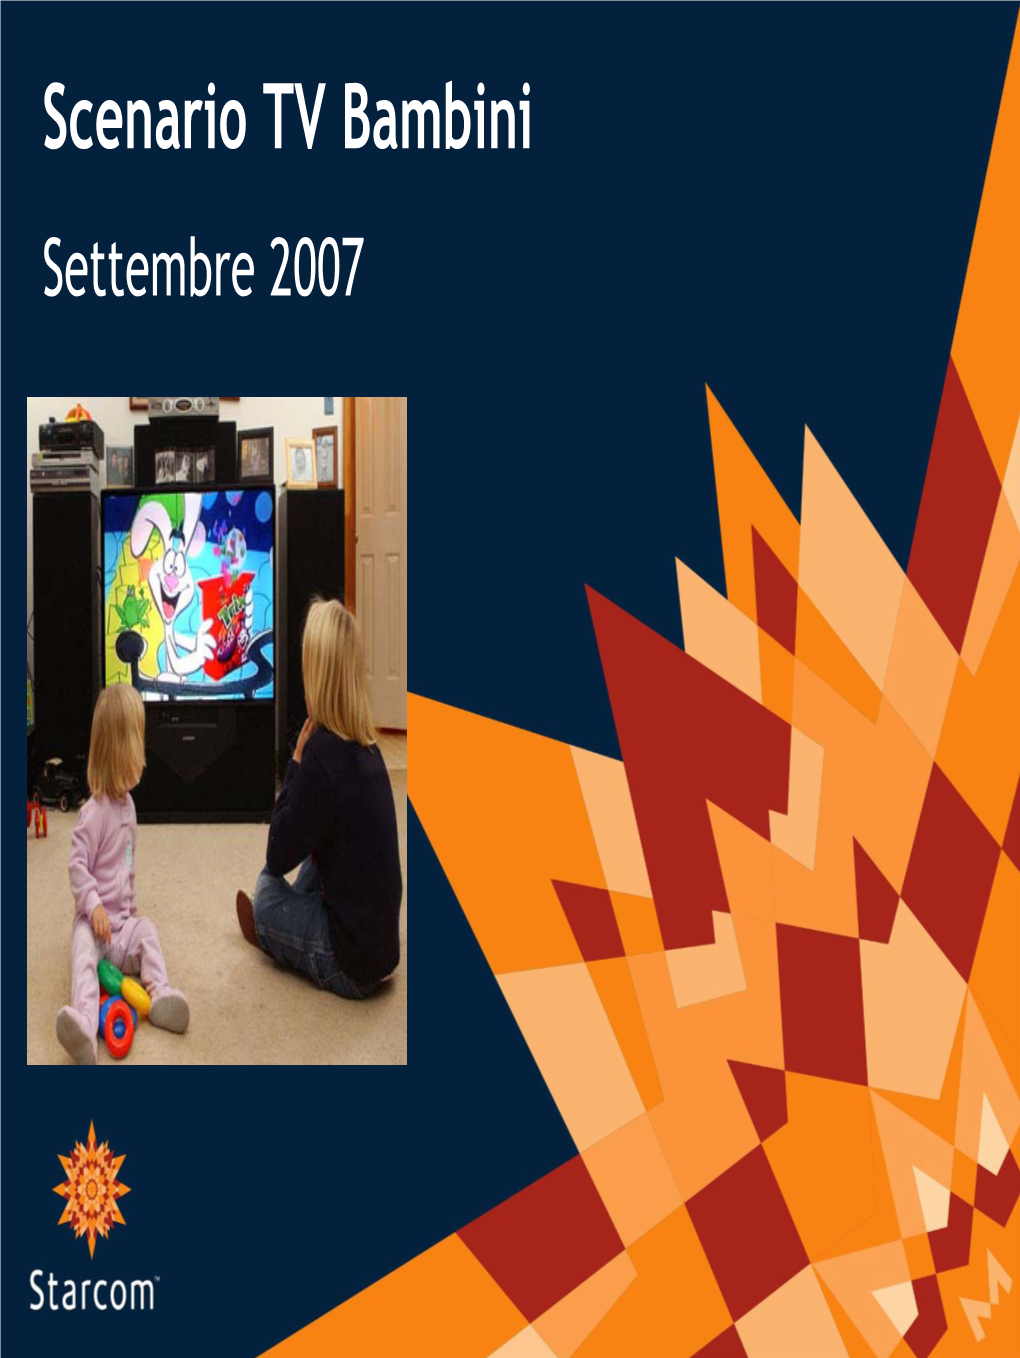 Scenario TV Bambini Settembre 2007 La Tv Del Passato E Quella Del Futuro